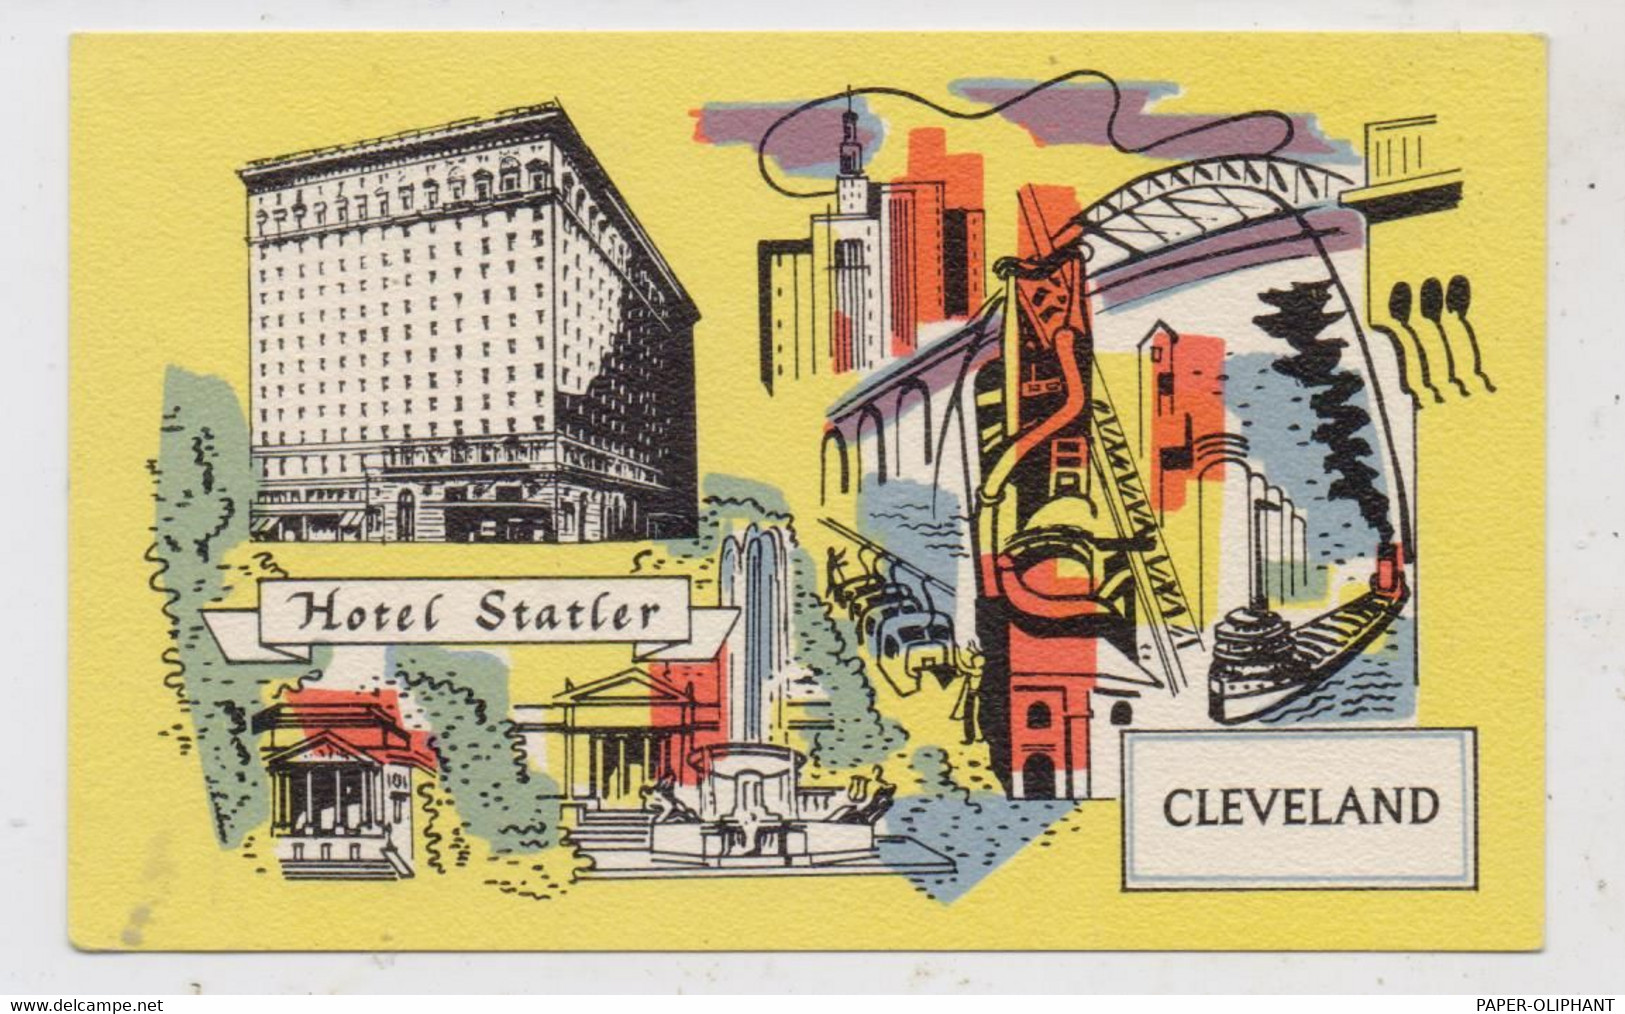 USA - OHIO - CLEVELAND, Hotel Statler - Cleveland